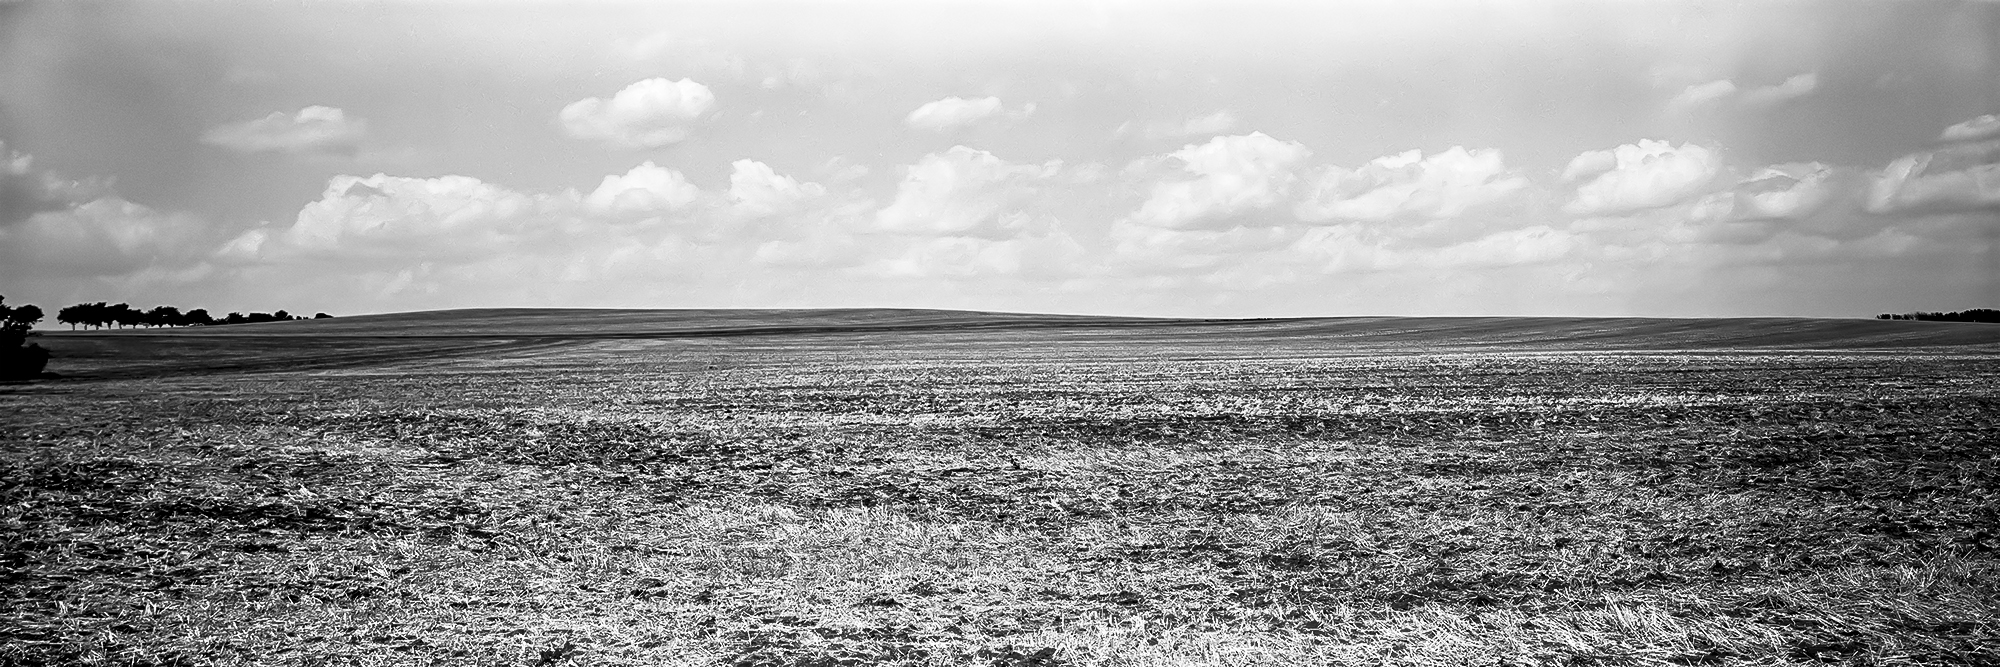 Landschaftspanorama 6x17 analog schwarzweiss